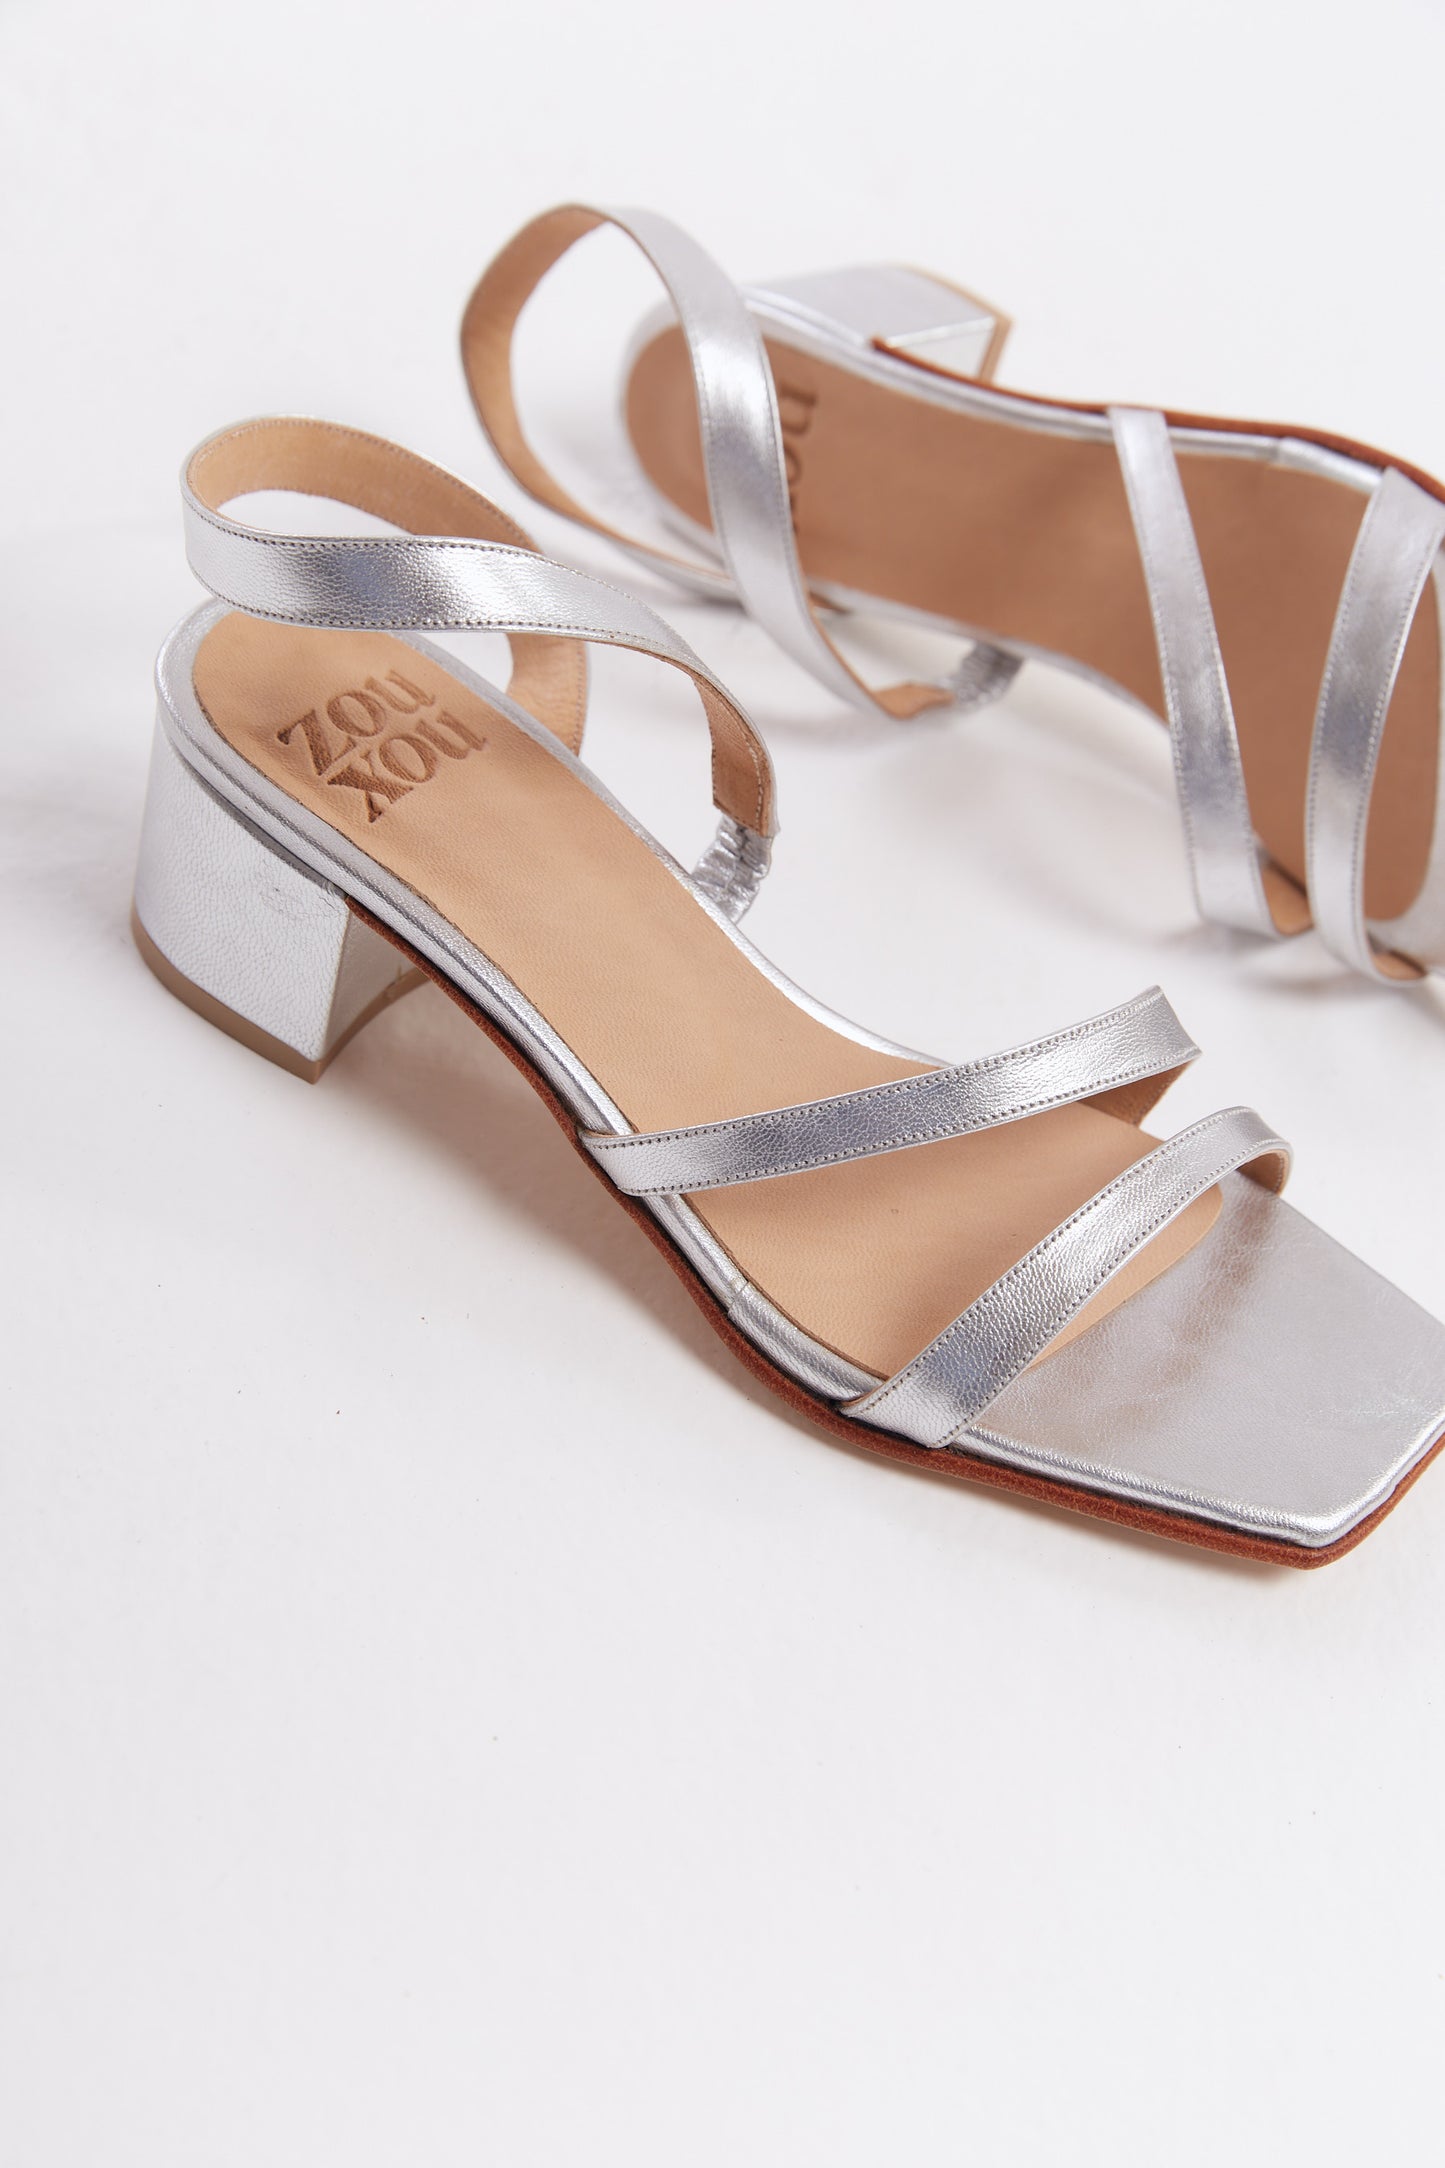 The Delfina Sandal in Silver